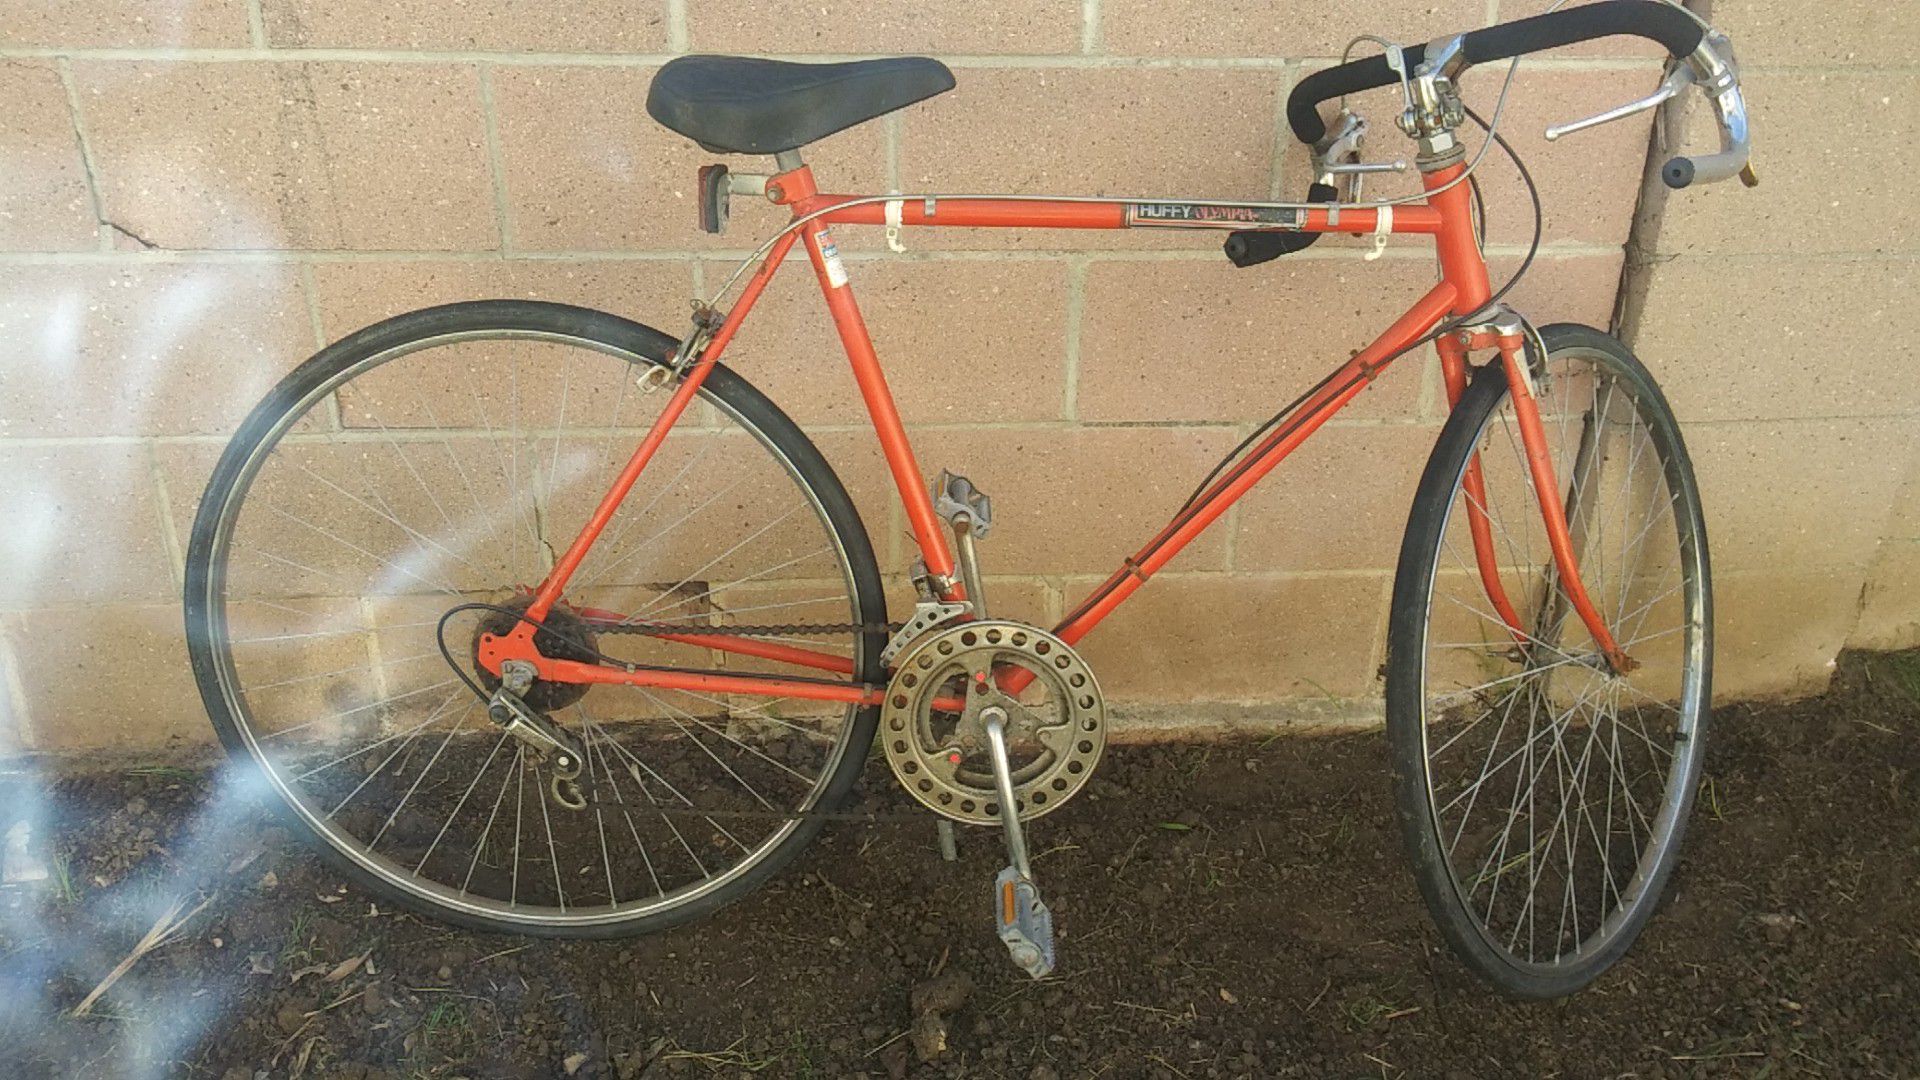 80s or 90s. Bike